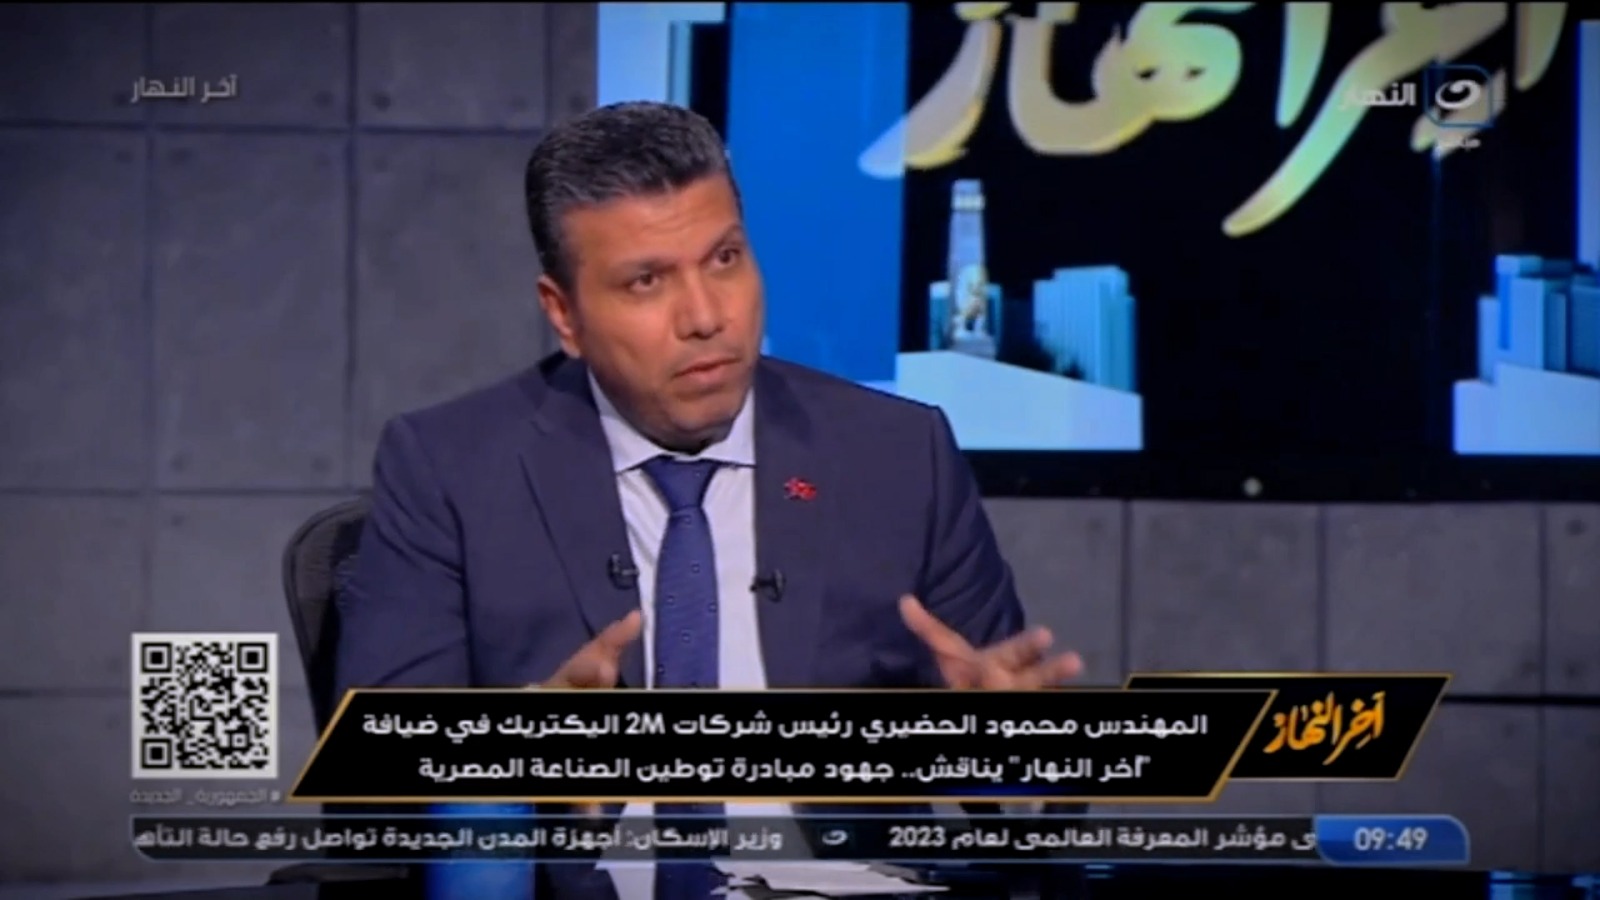 م/ محمود الحضيري رئيس شركات تو ام اليكتريك مع الاعلامي تامر أمين